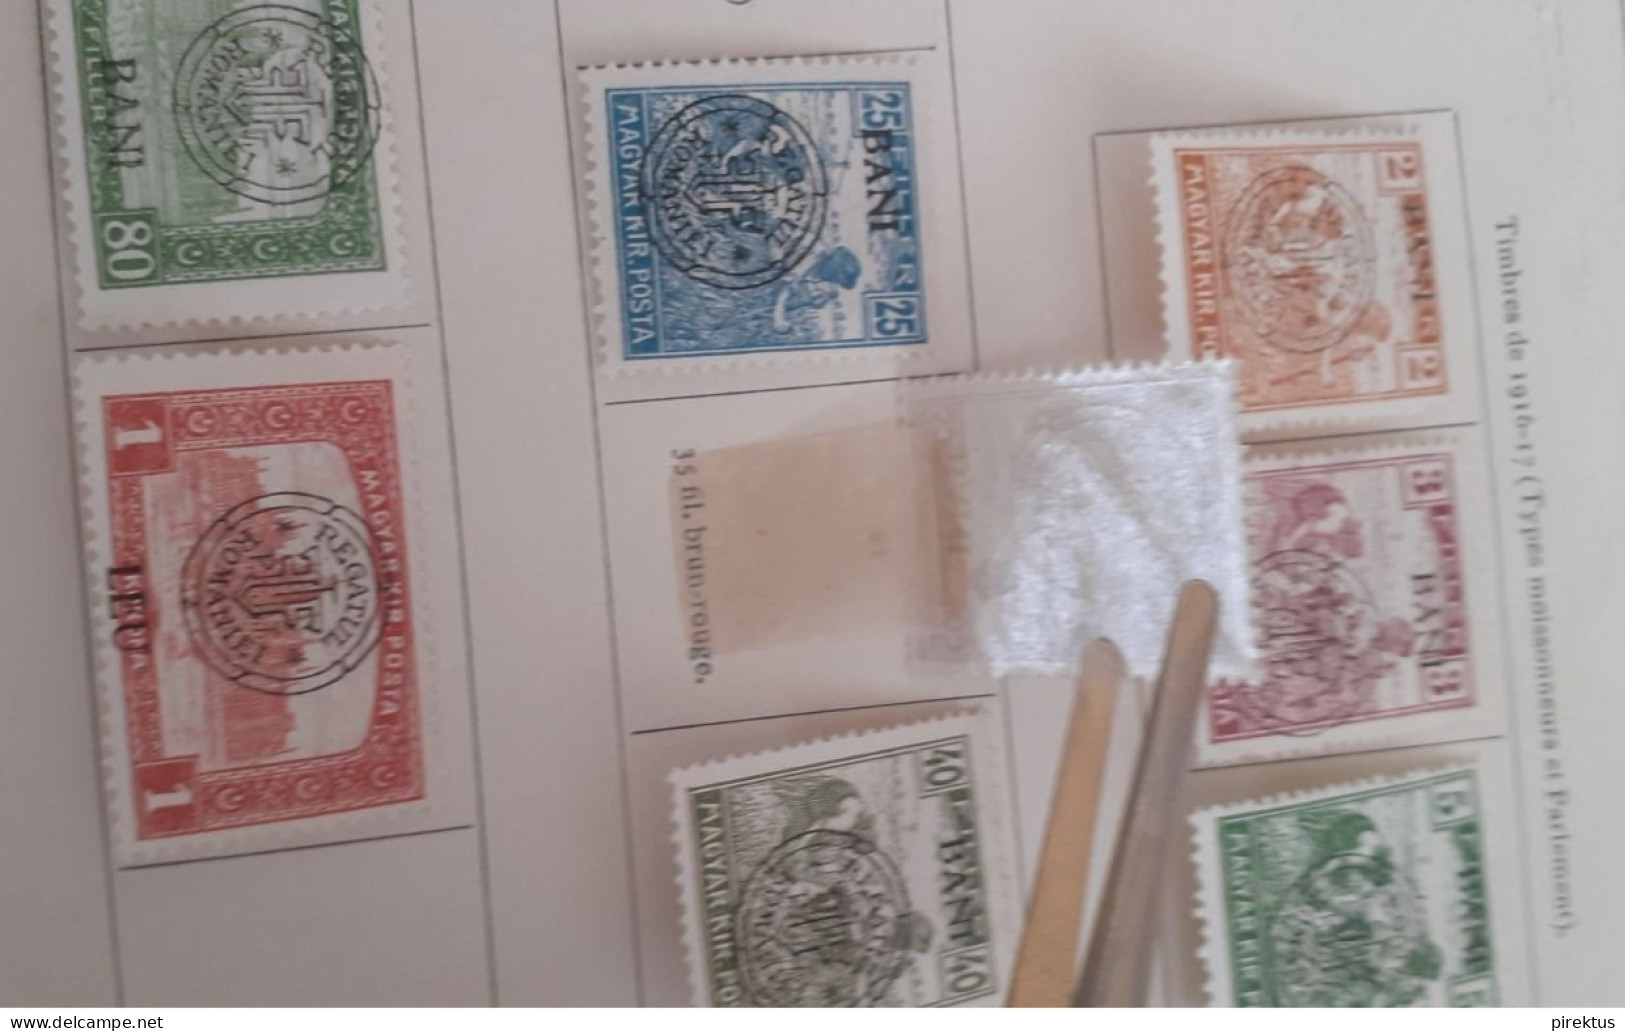 Romania 1913-1920 Stamps Lot - Siebenbürgen (Transsylvanien)